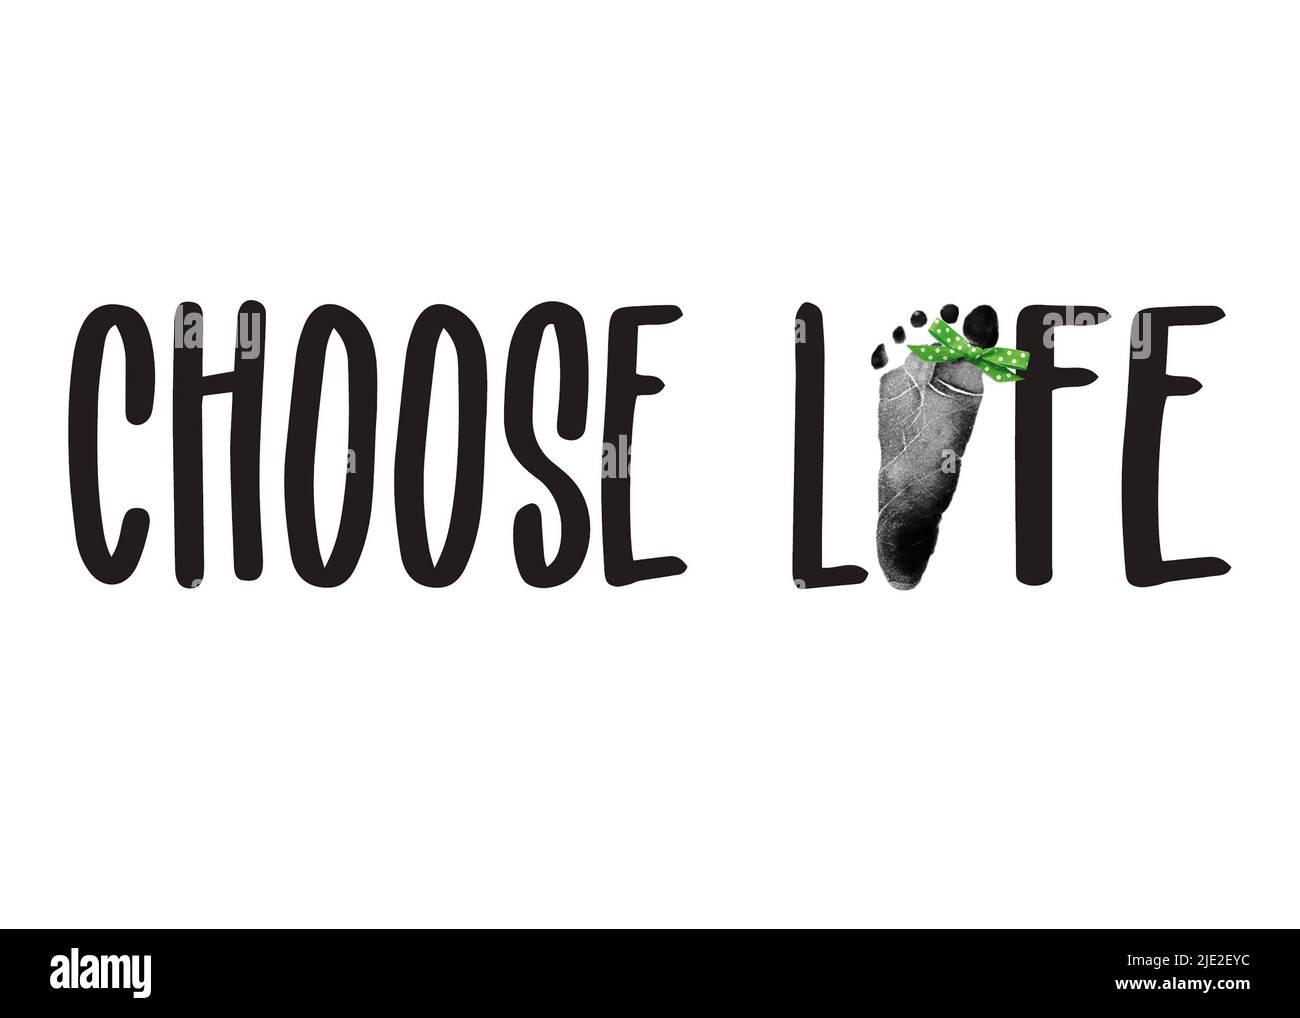 Testo anti-aborto con footprint del bambino e arco a pois verde isolato su bianco Foto Stock